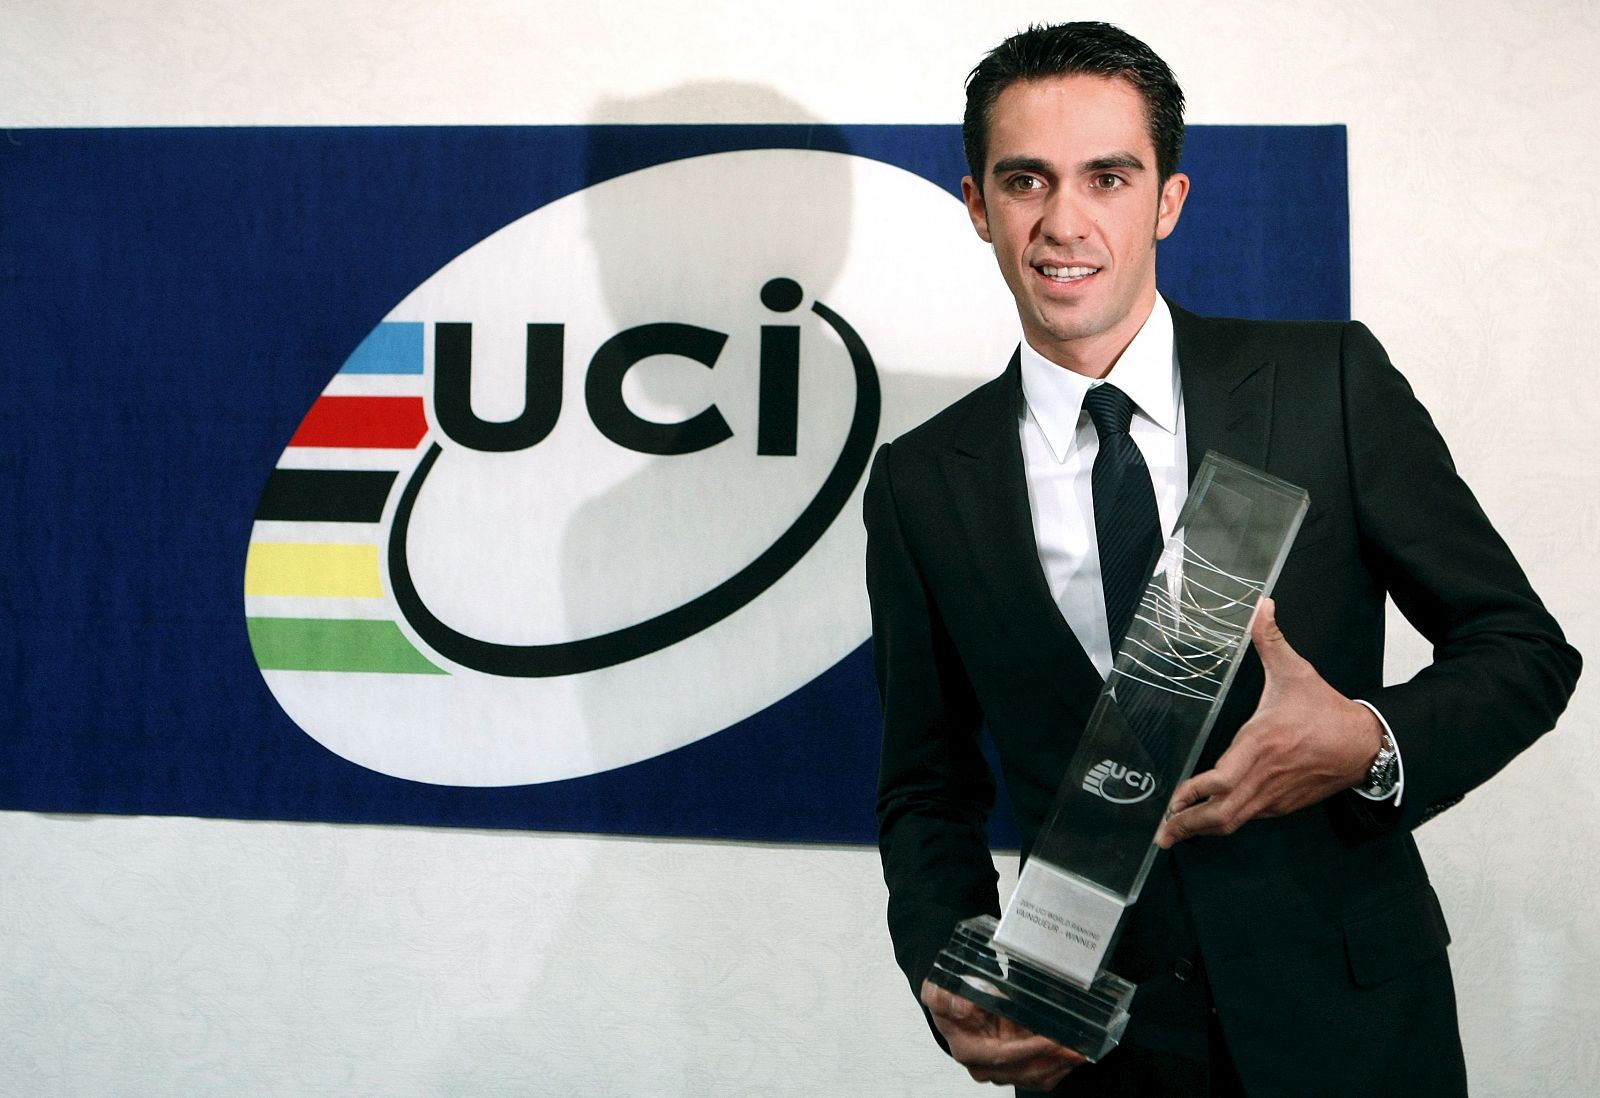 El corredor Alberto Contador, ganador de la última edición del Tour de Francia, tras recibir el trofeo que le acredita como ganador de la clasificación mundial individual, de manos del presidente de la Unión Ciclista Internacional, Pat McQuaid.